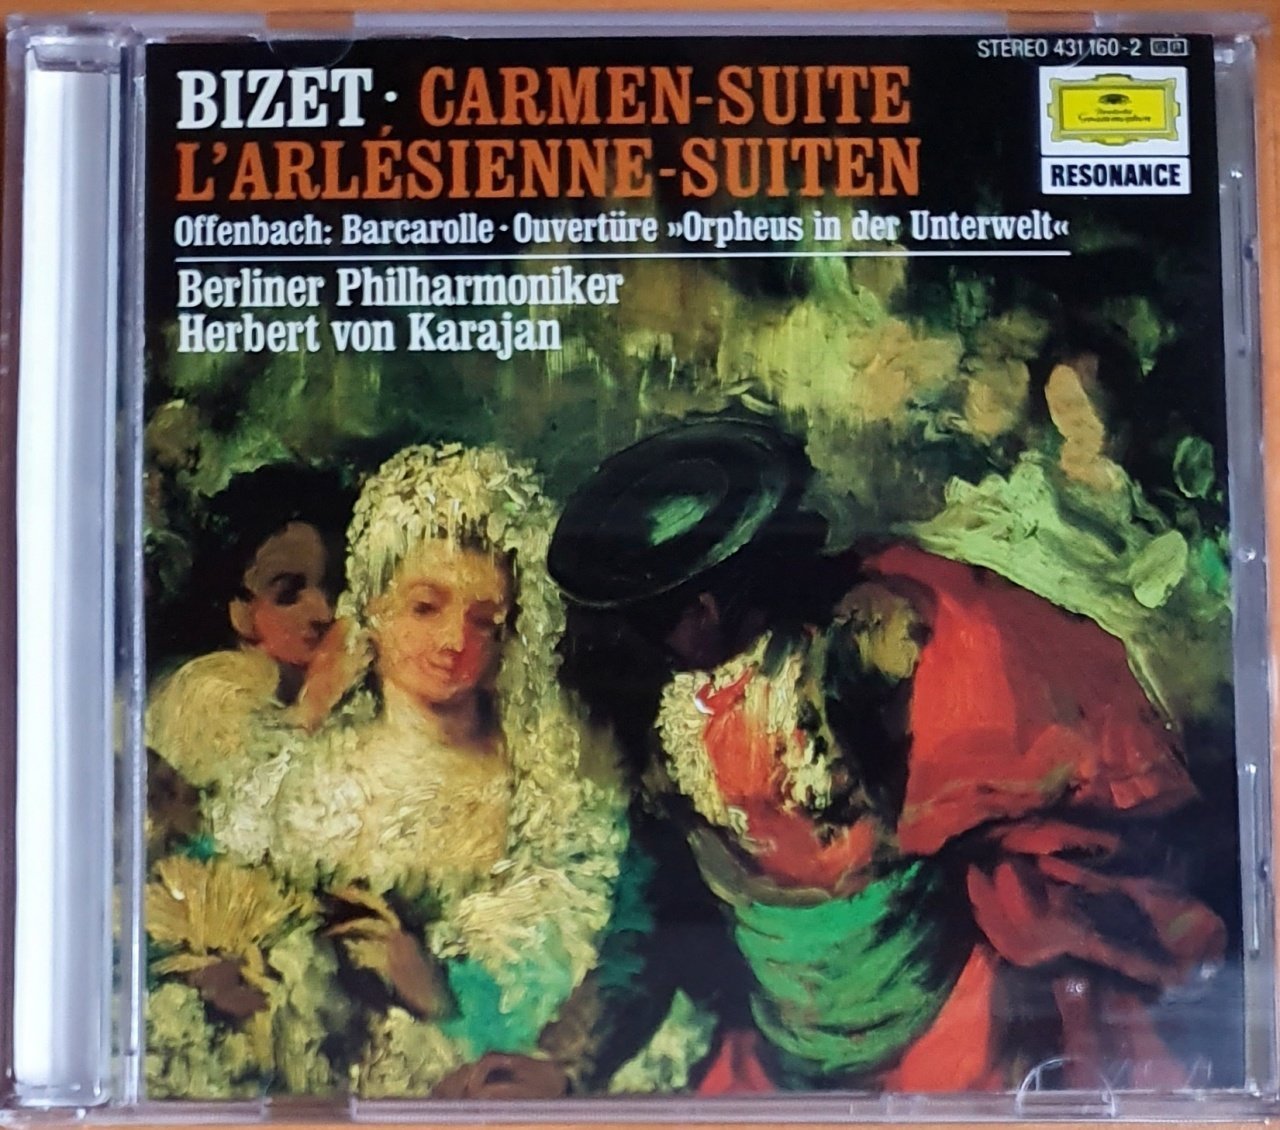 BIZET: CARMEN-SUITE / L'ARLESIENNE-SUTIEN U.A. / BERLINER PHILHARMONIKER, KARAJAN (1991) - CD RESONANCE 2.EL